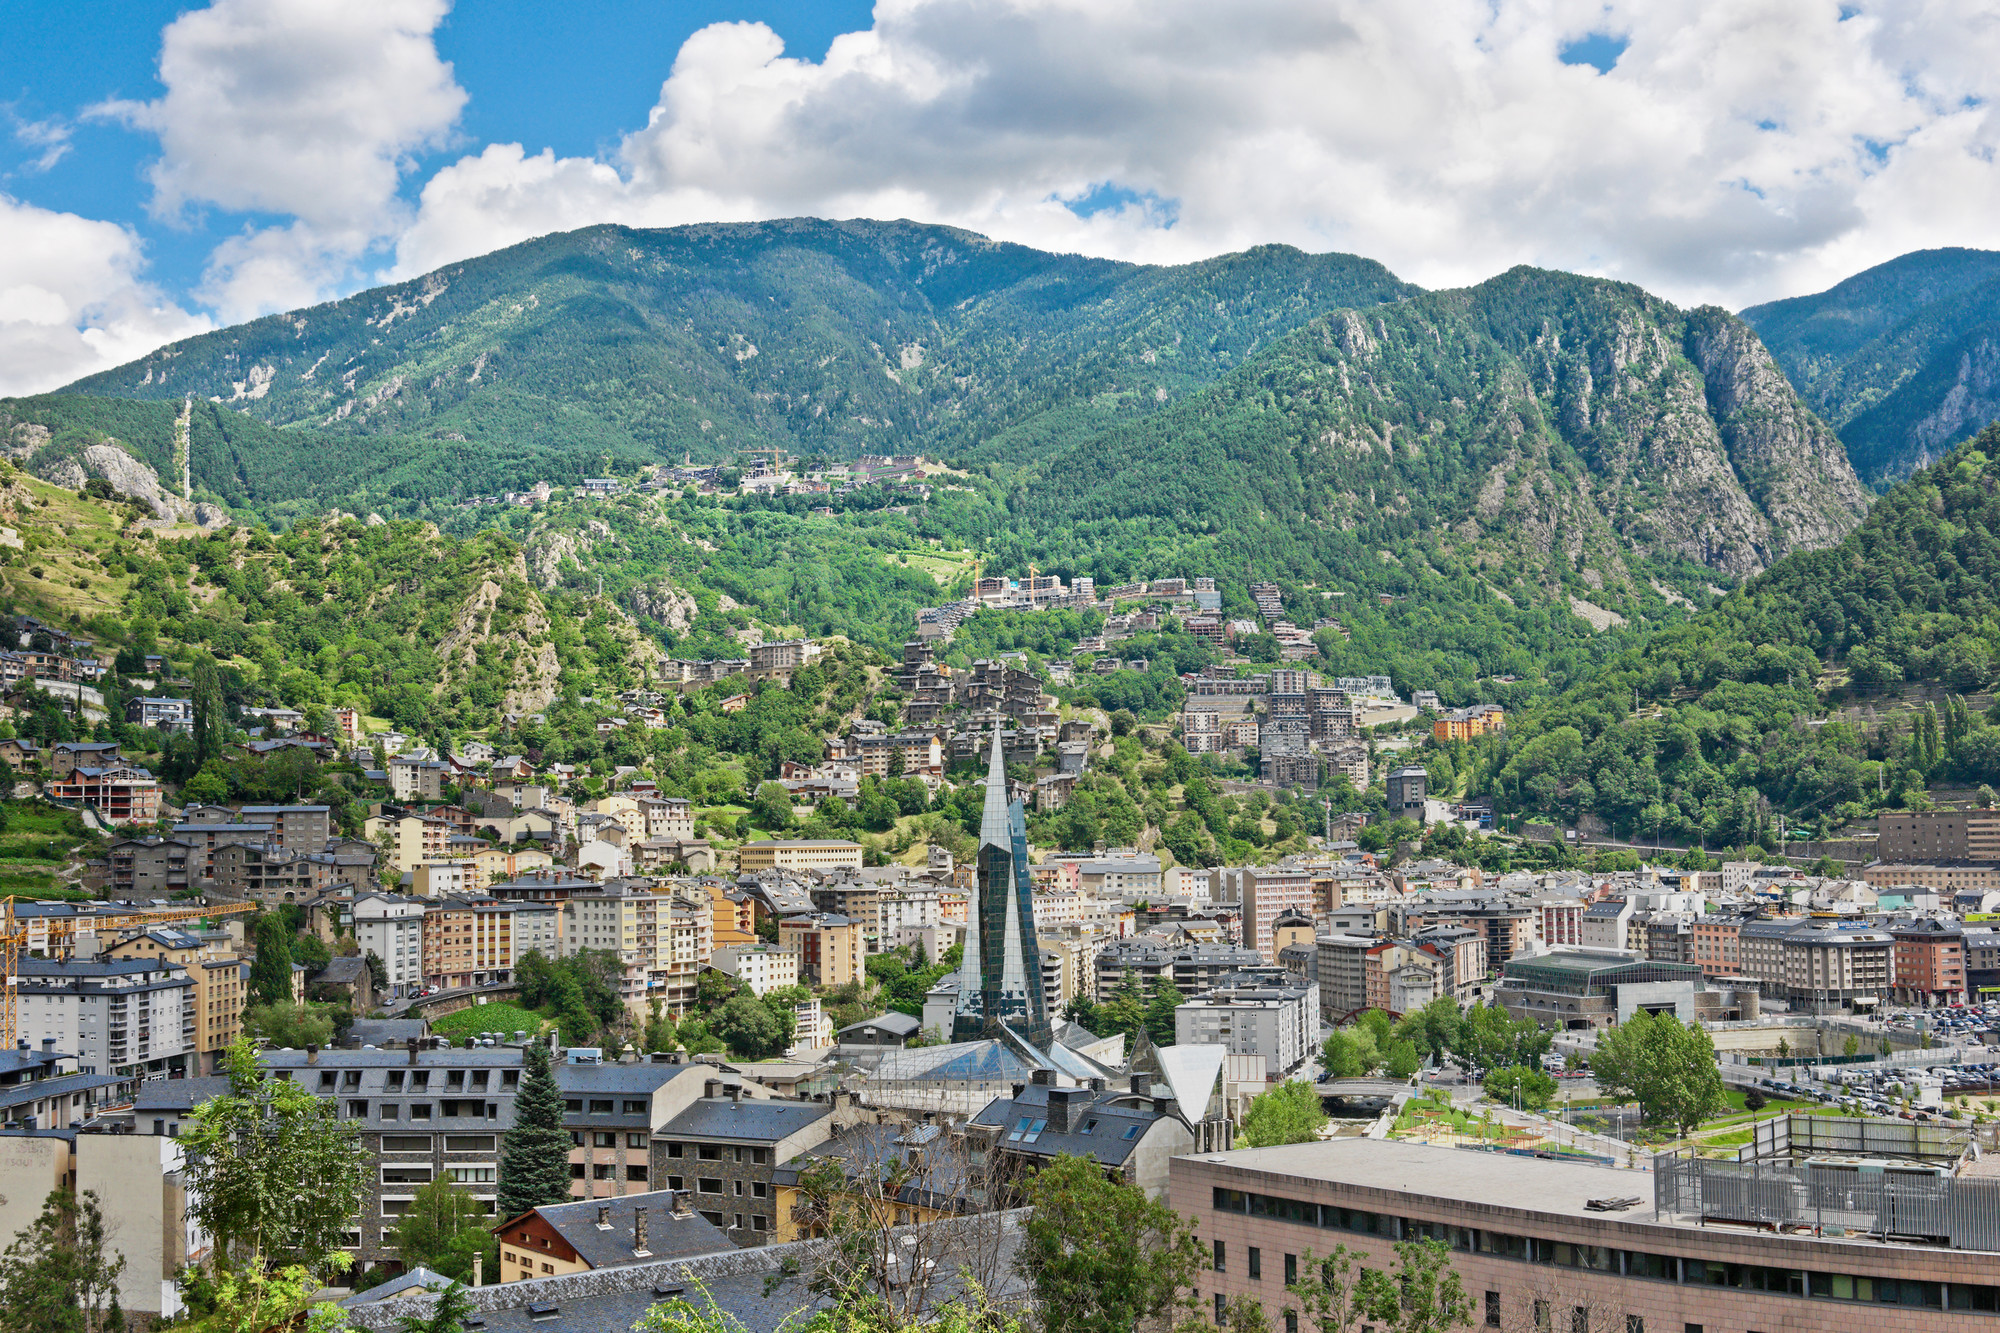 Must See Cultural Landmarks in Andorra